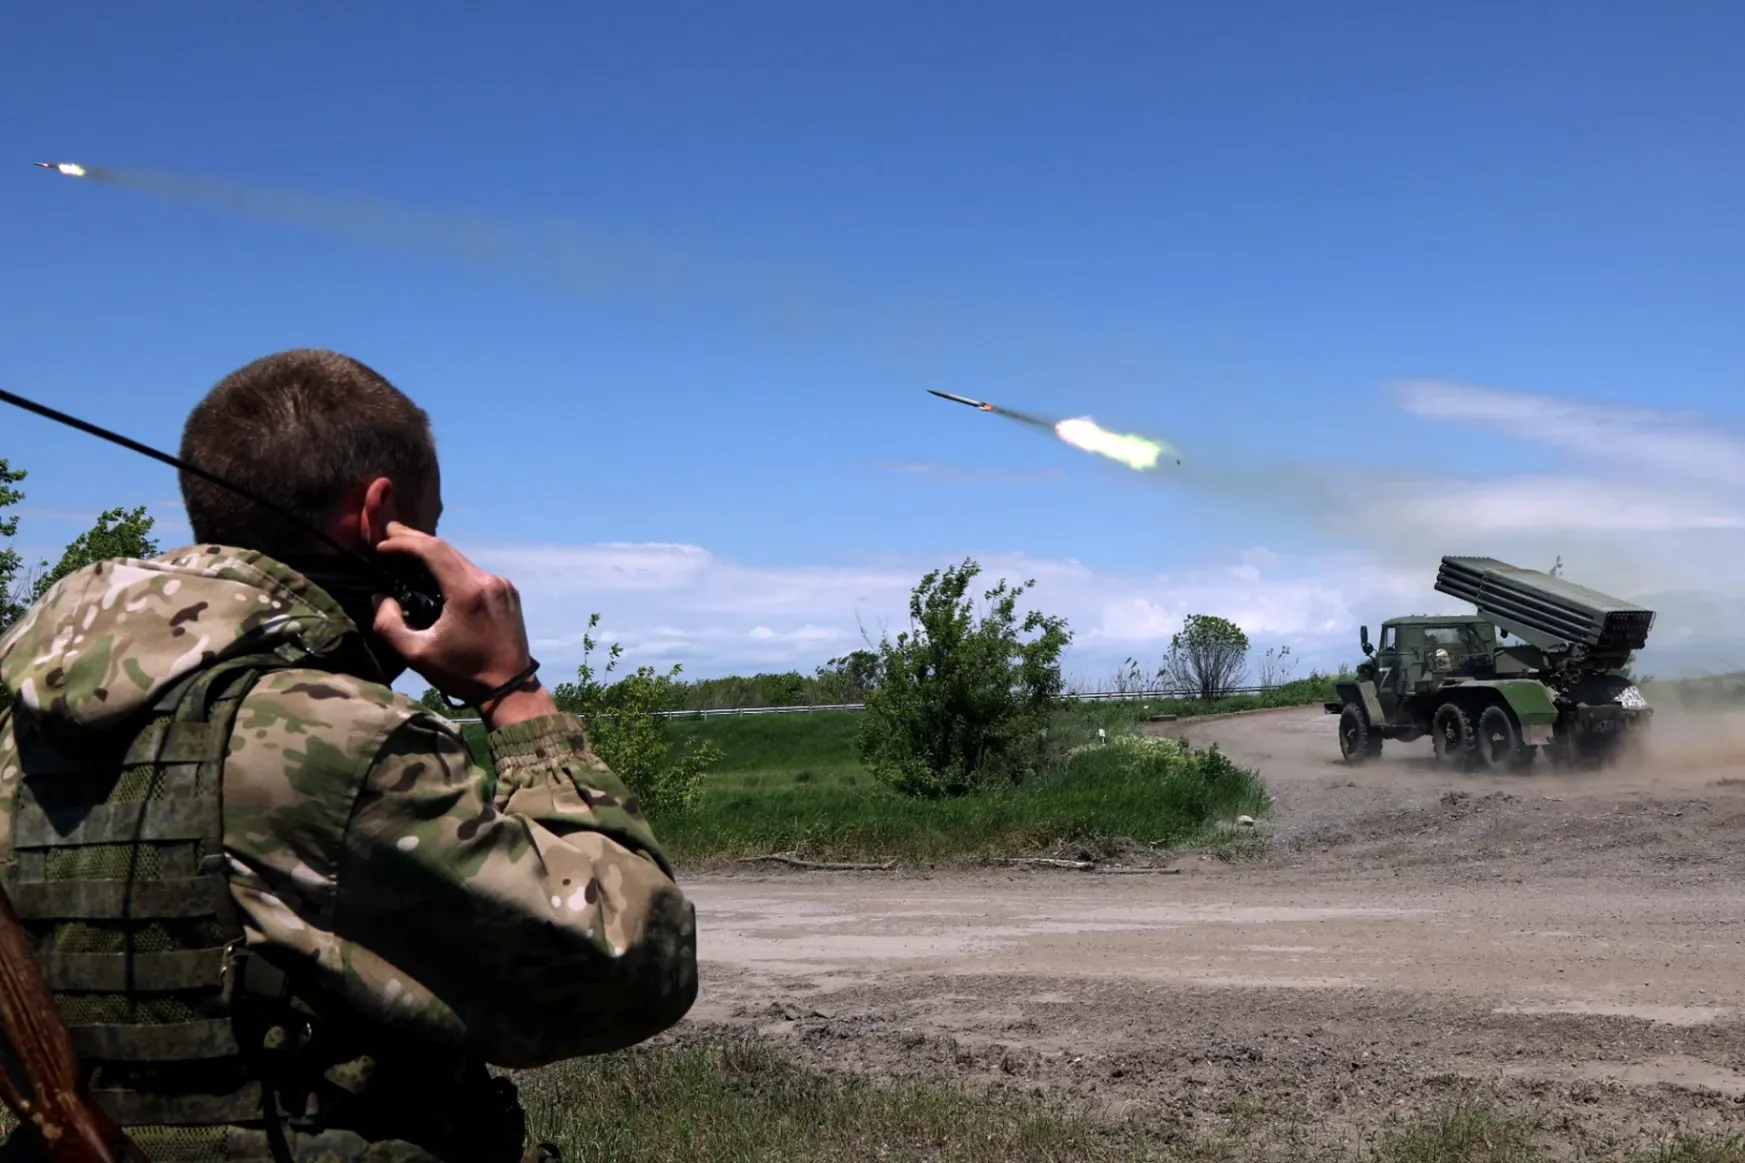 Nem fognak megpihenni az oroszok, folytatják az ukránok felőrlését keleten